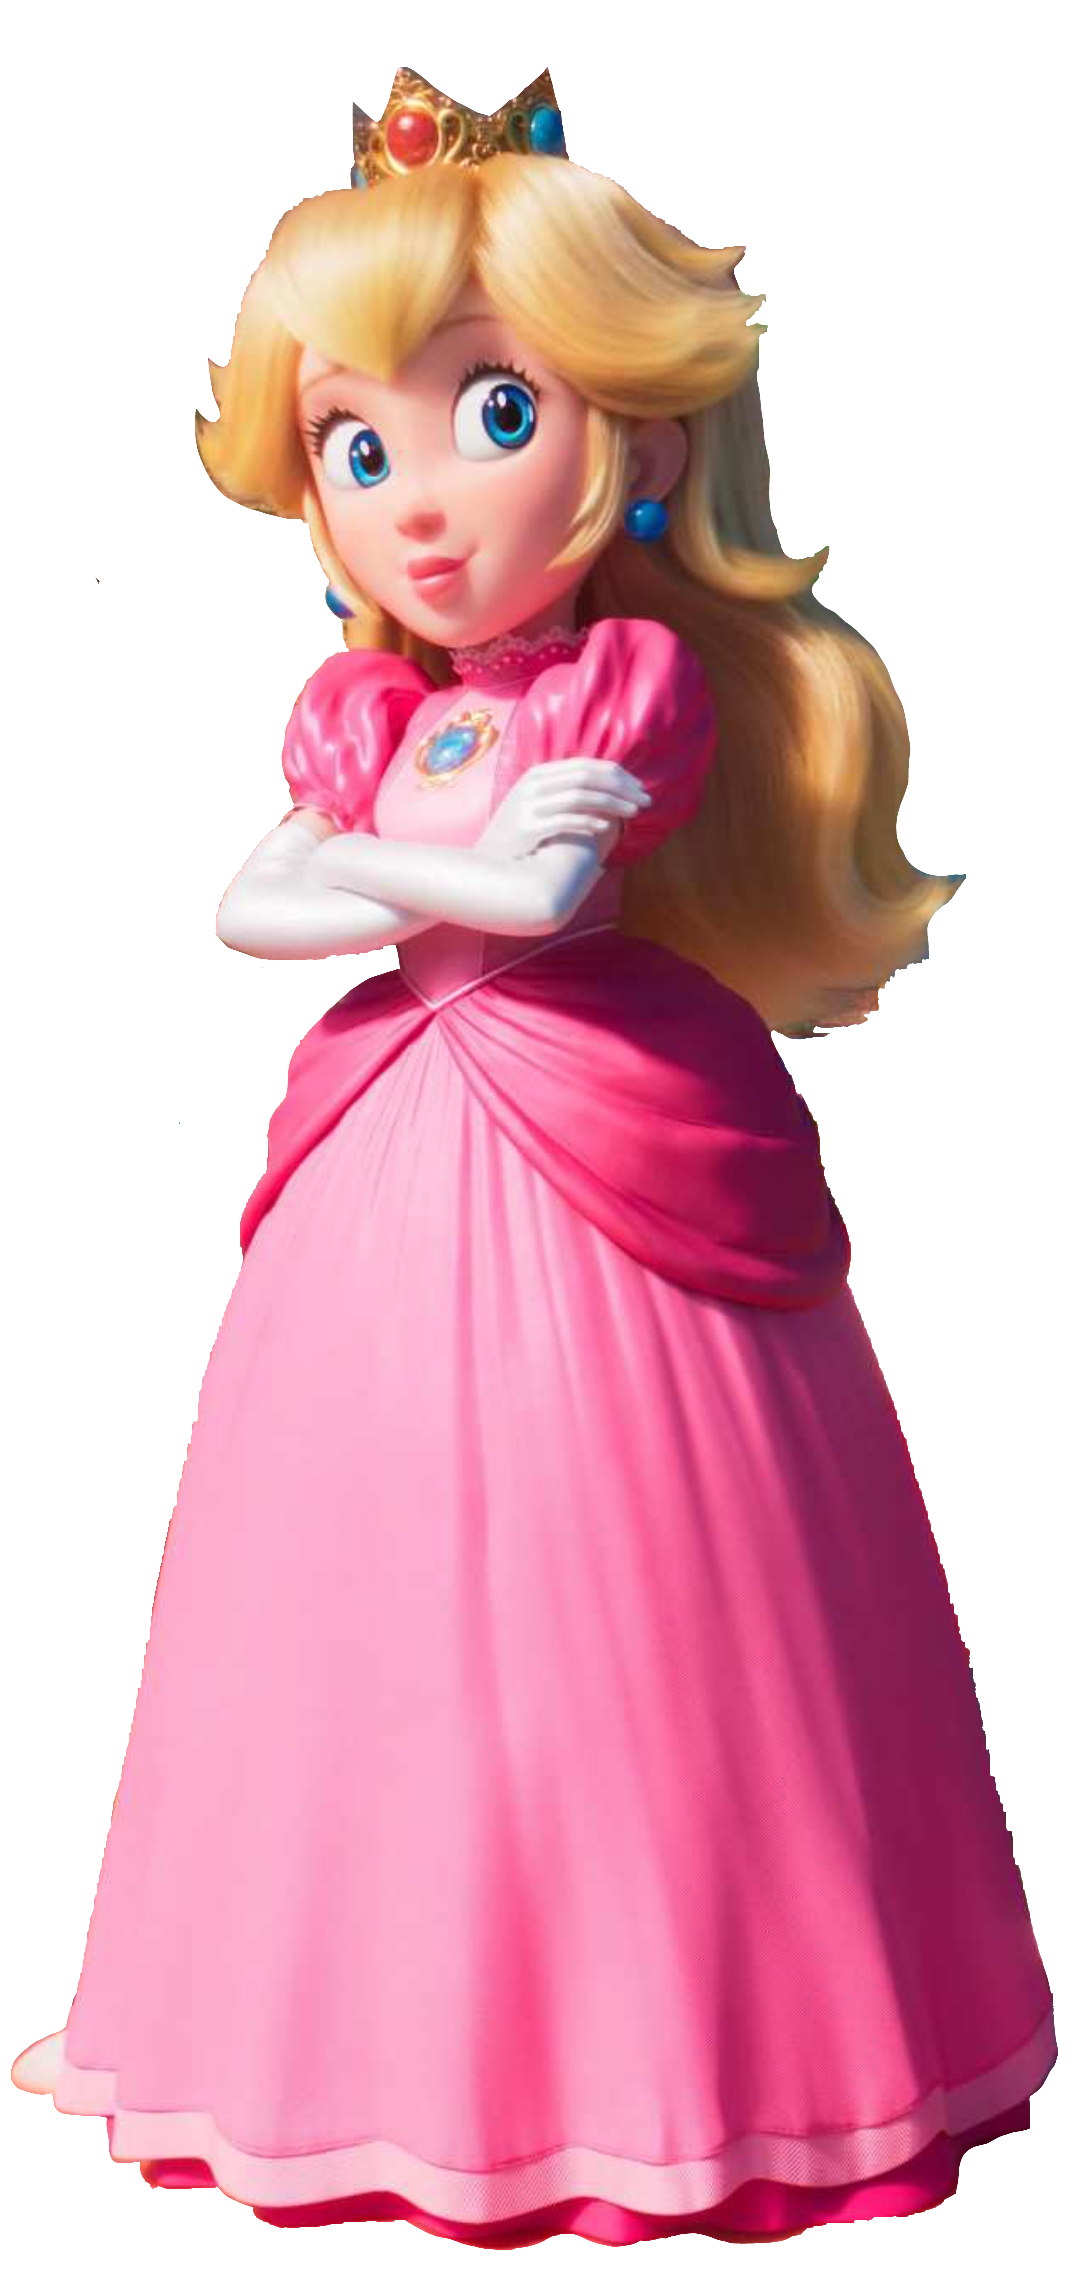 Princess Peach The Super Mario Bros Moviegallery Mariowiki Fandom